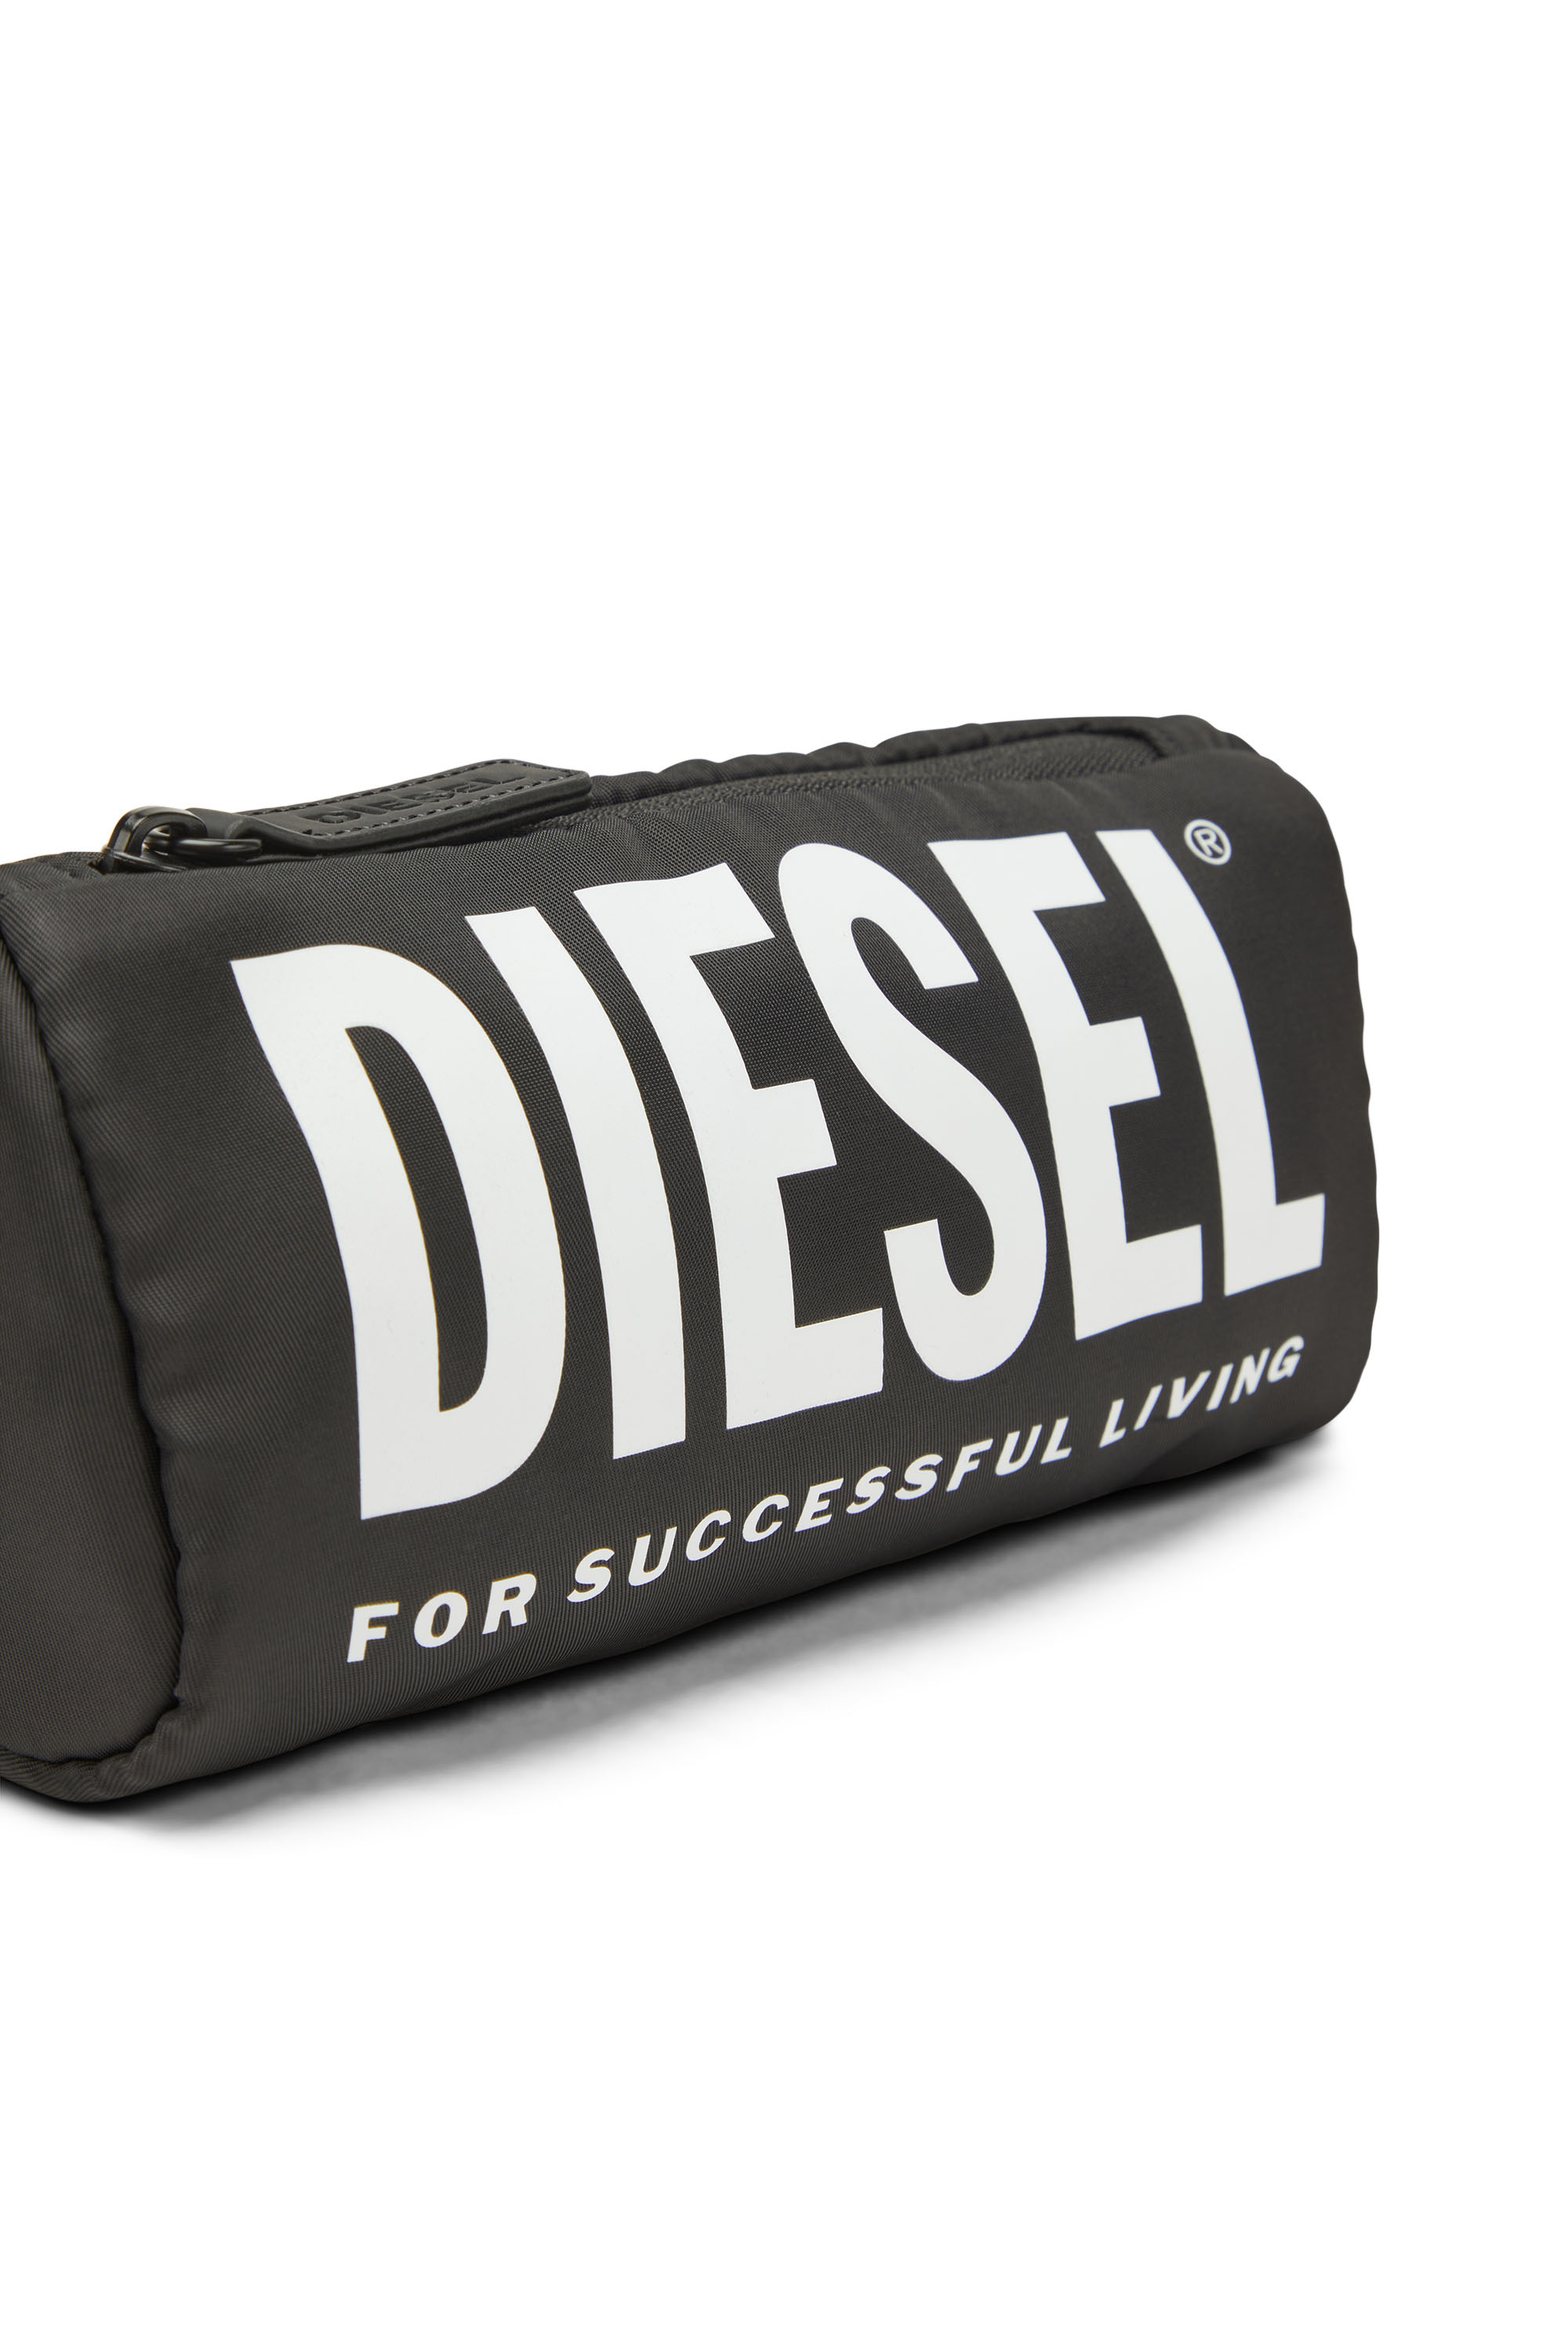 Diesel - WCASELOGO, Noir - Image 4